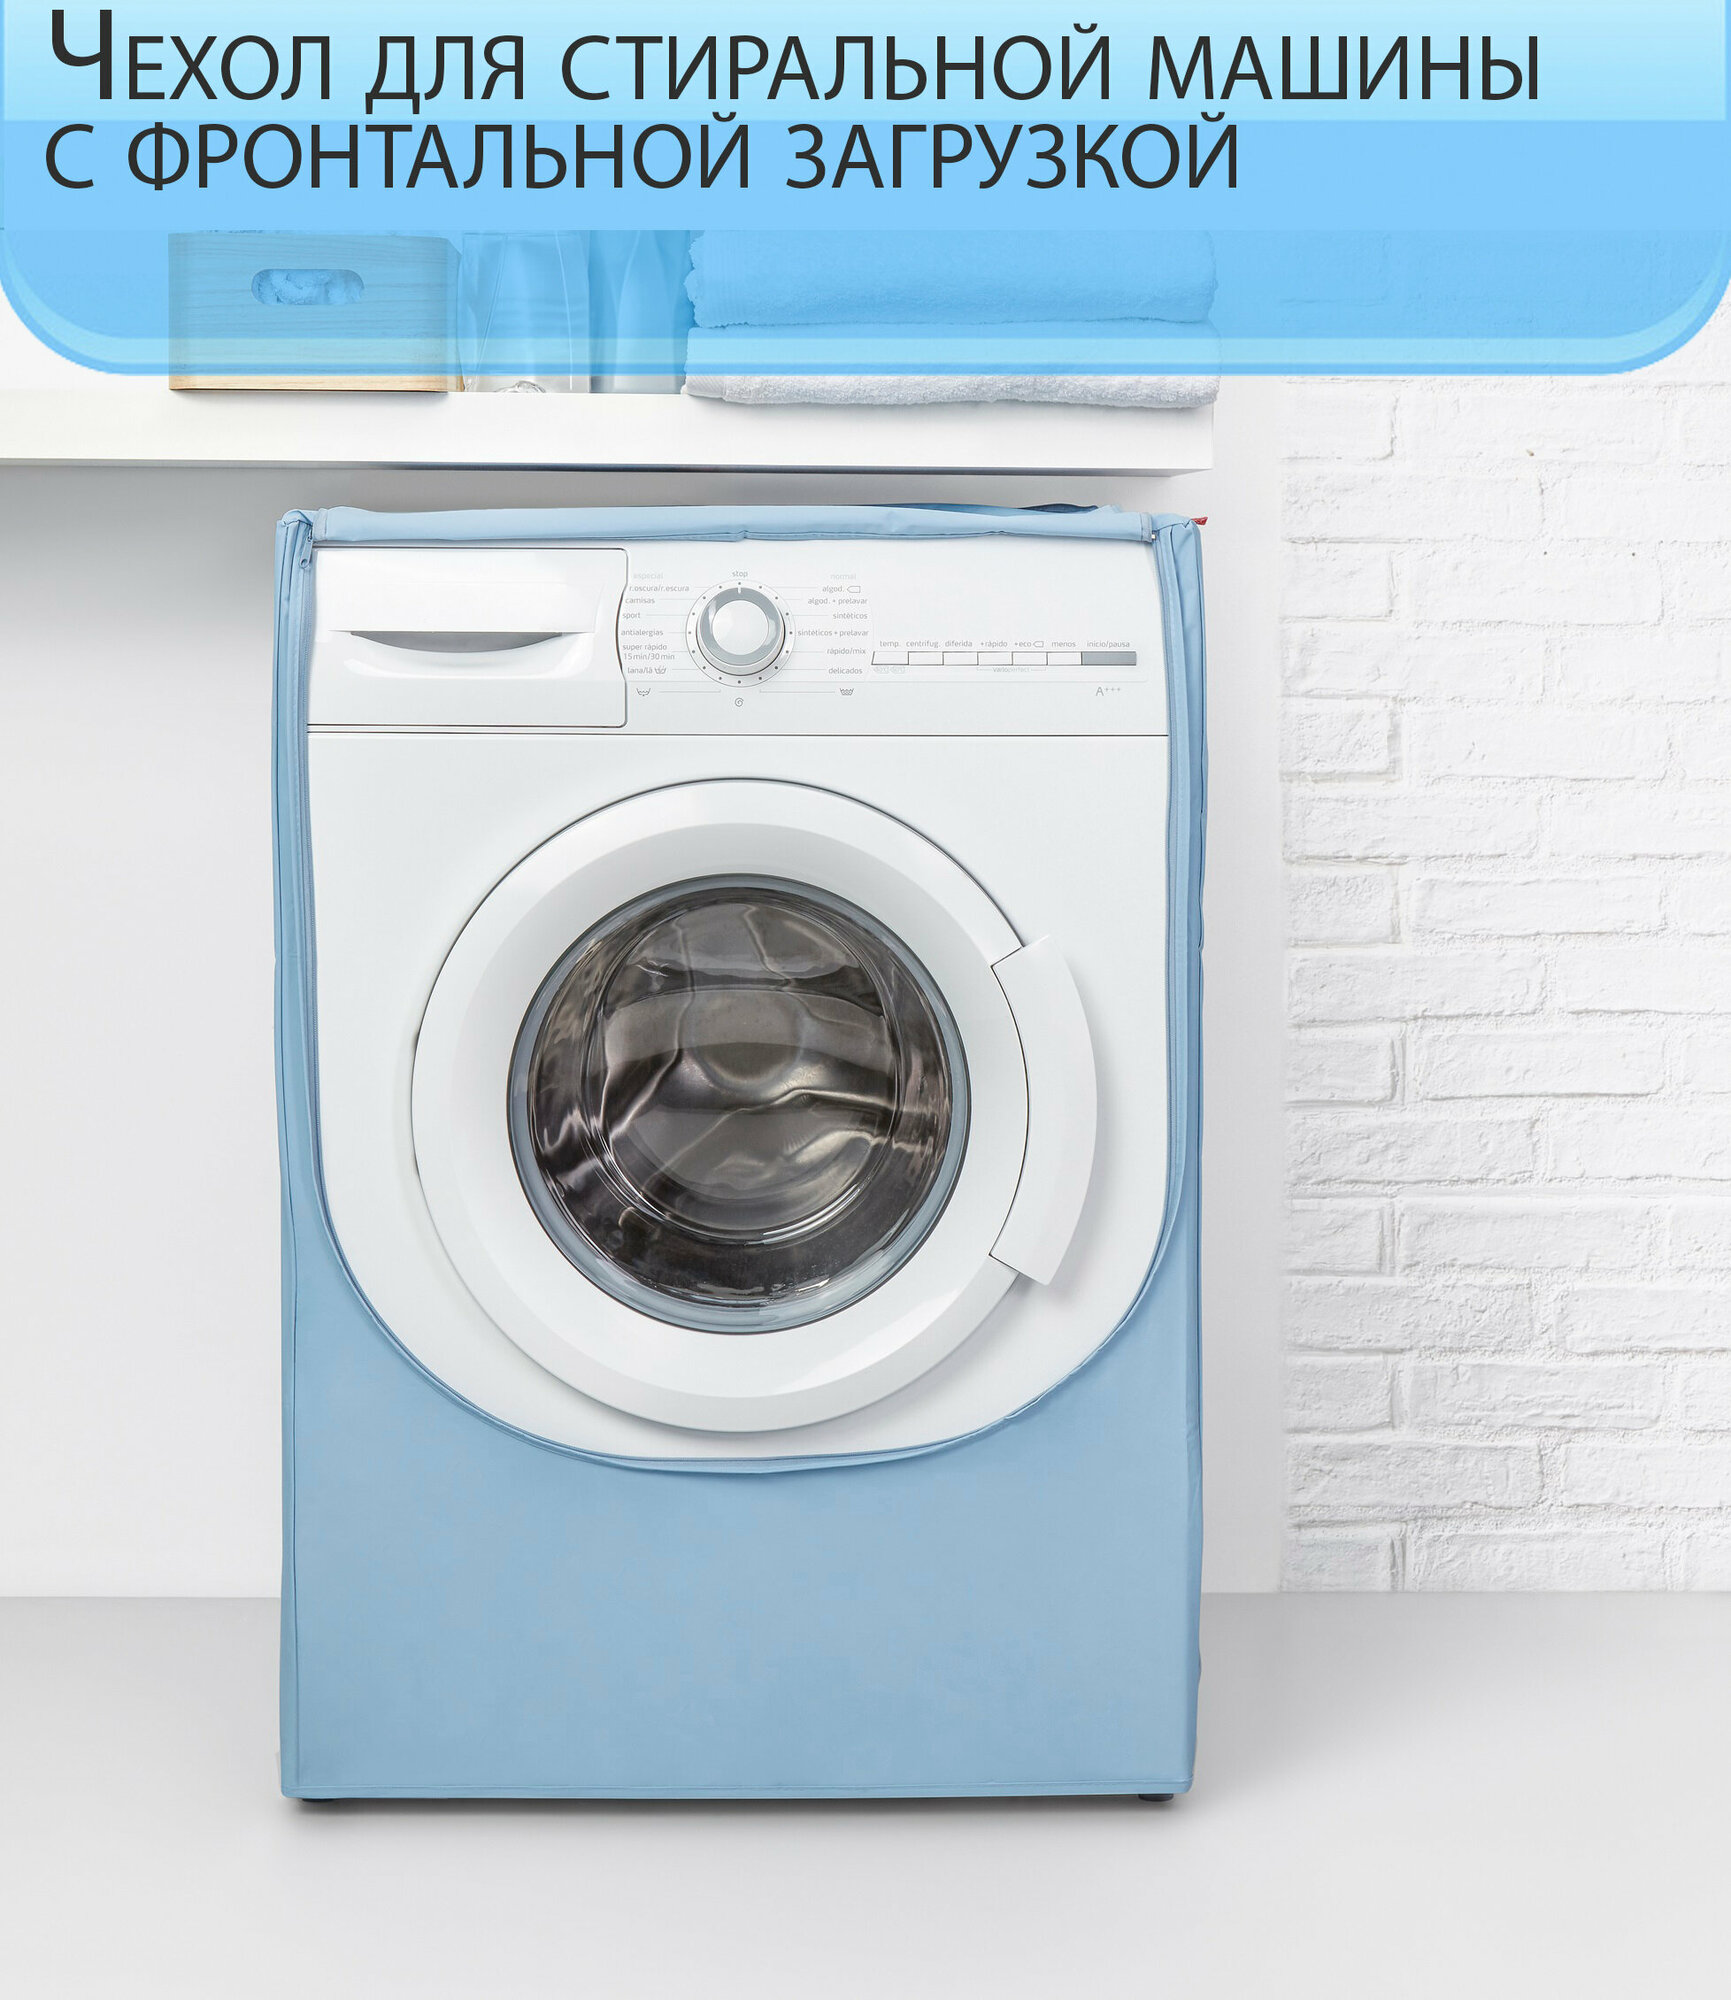 Чехол для стиральной машины